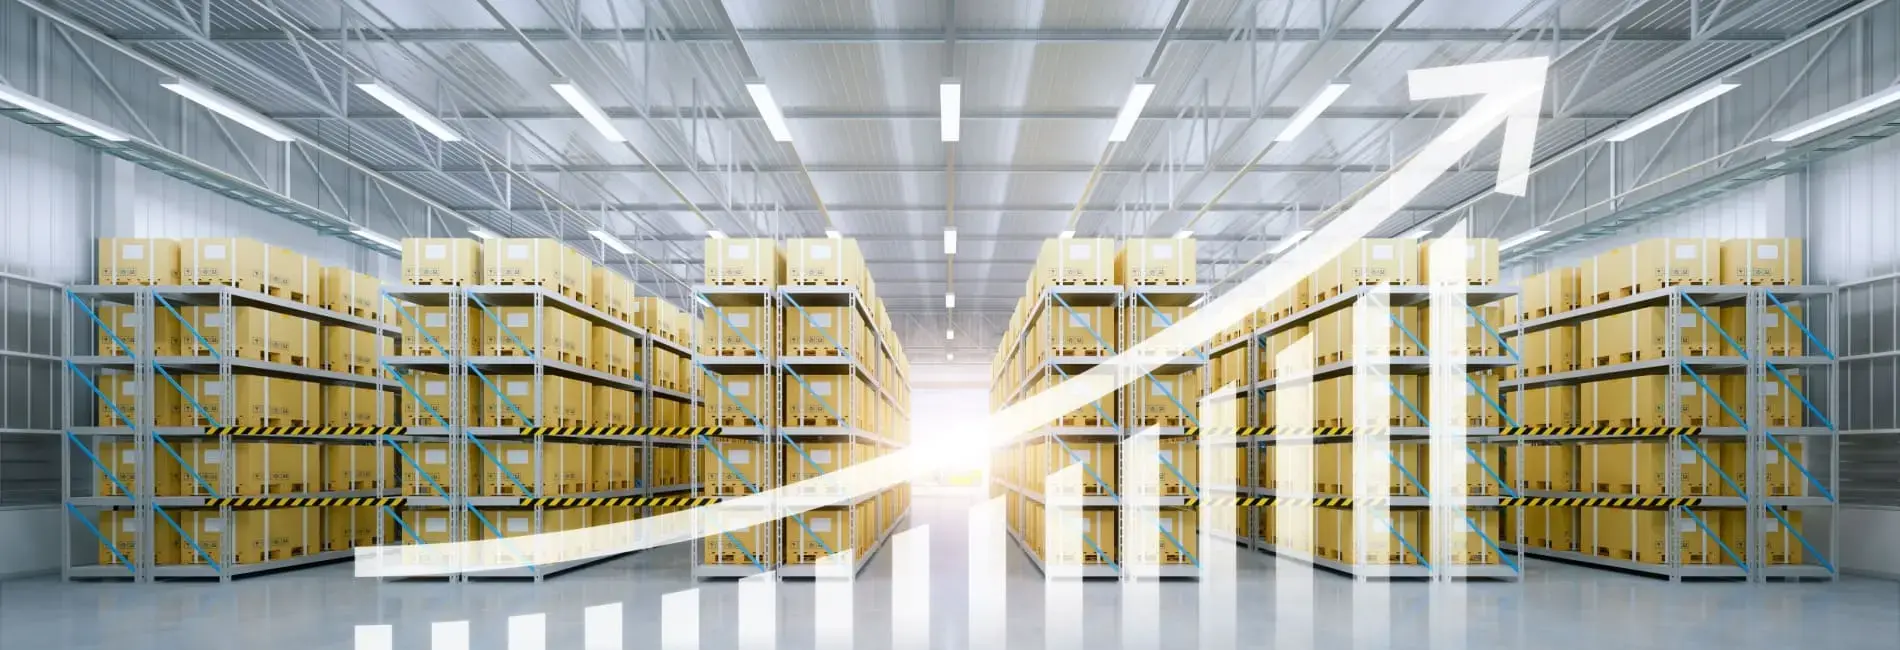 5 Ways To Improve Warehouse Productivity